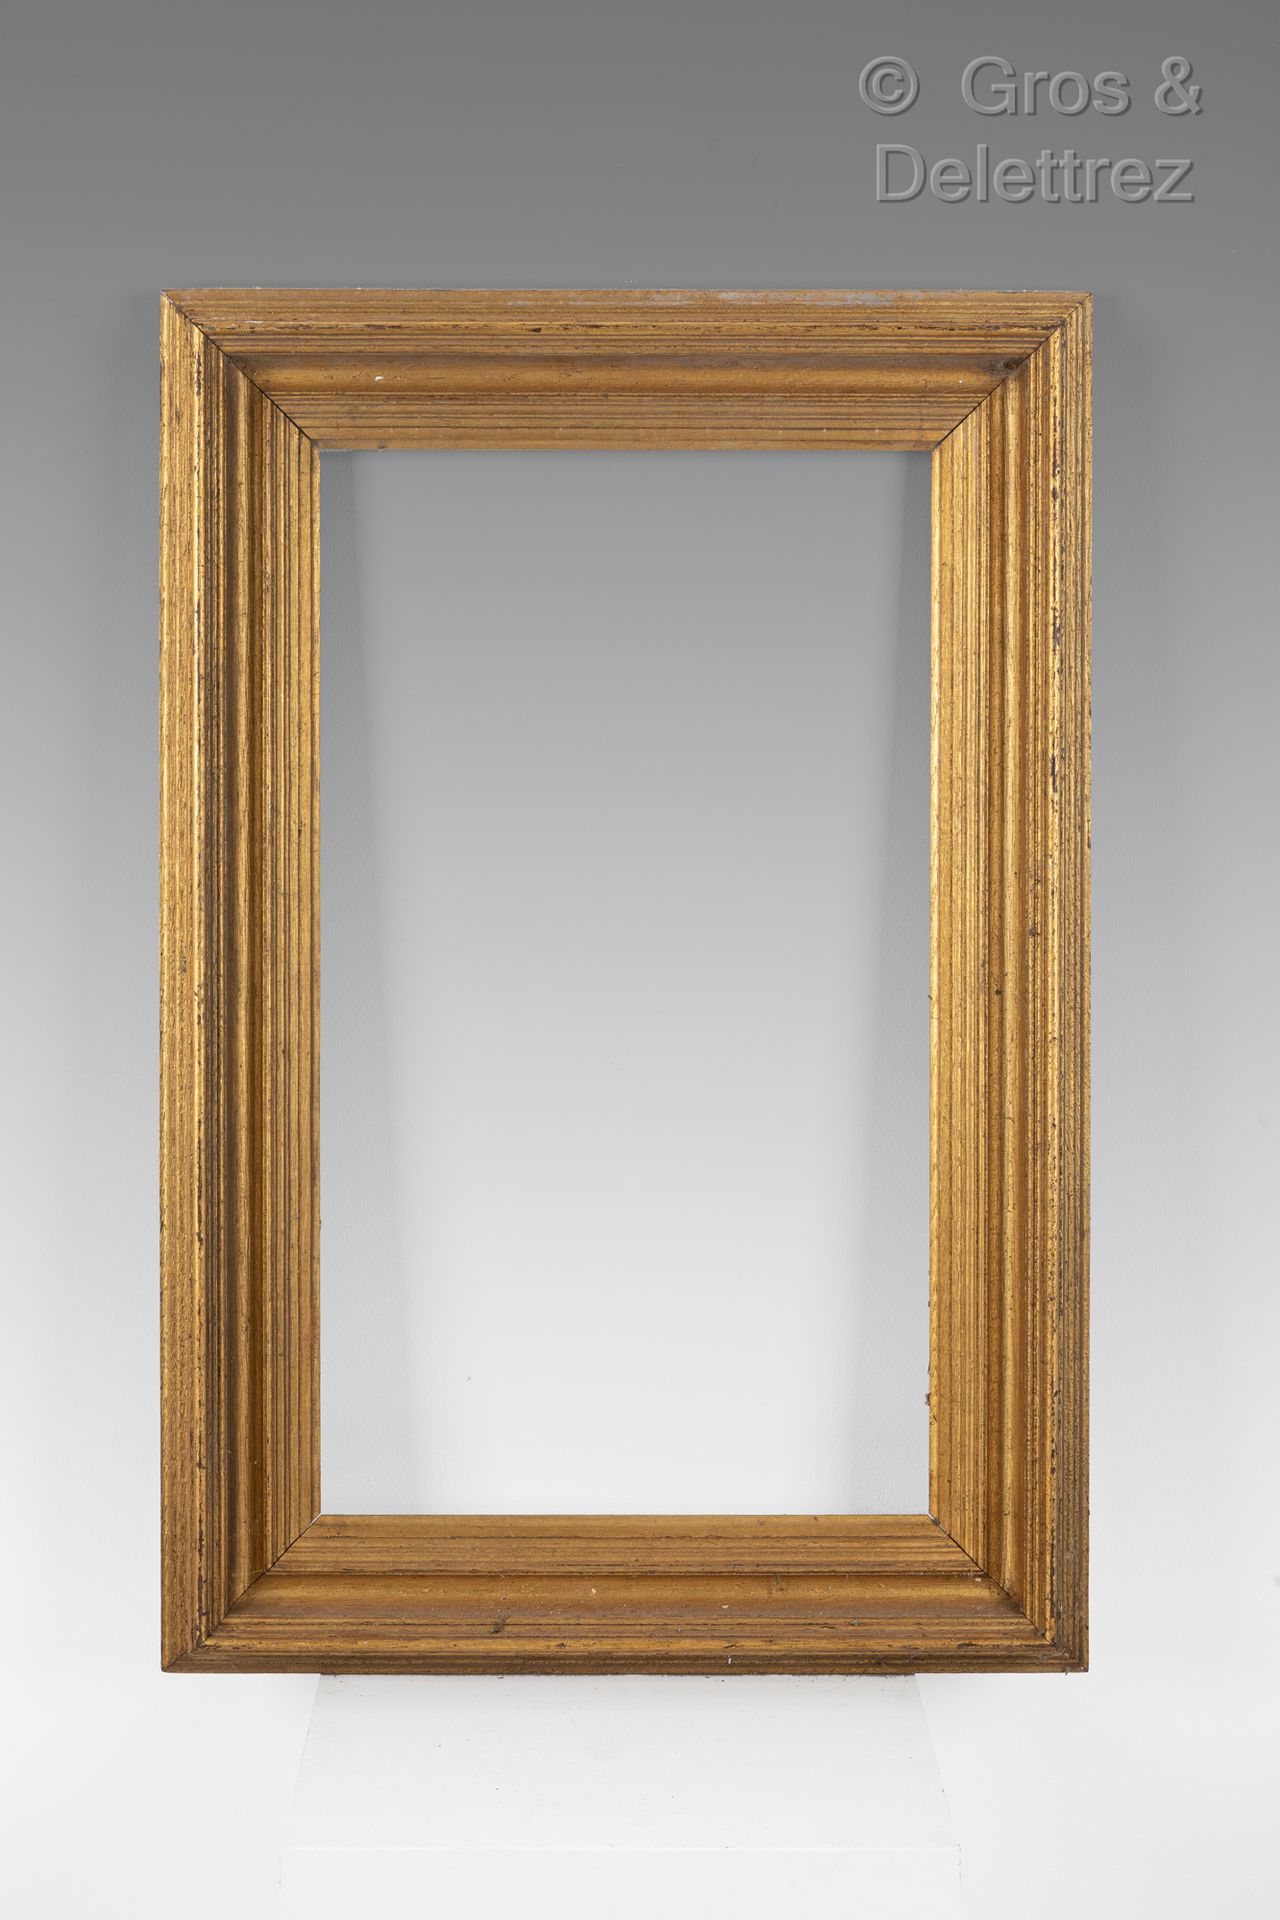 Null 镀金和模制的橡木框架

约1900年

30,4 x 53,8 x 7,5 cm 10M